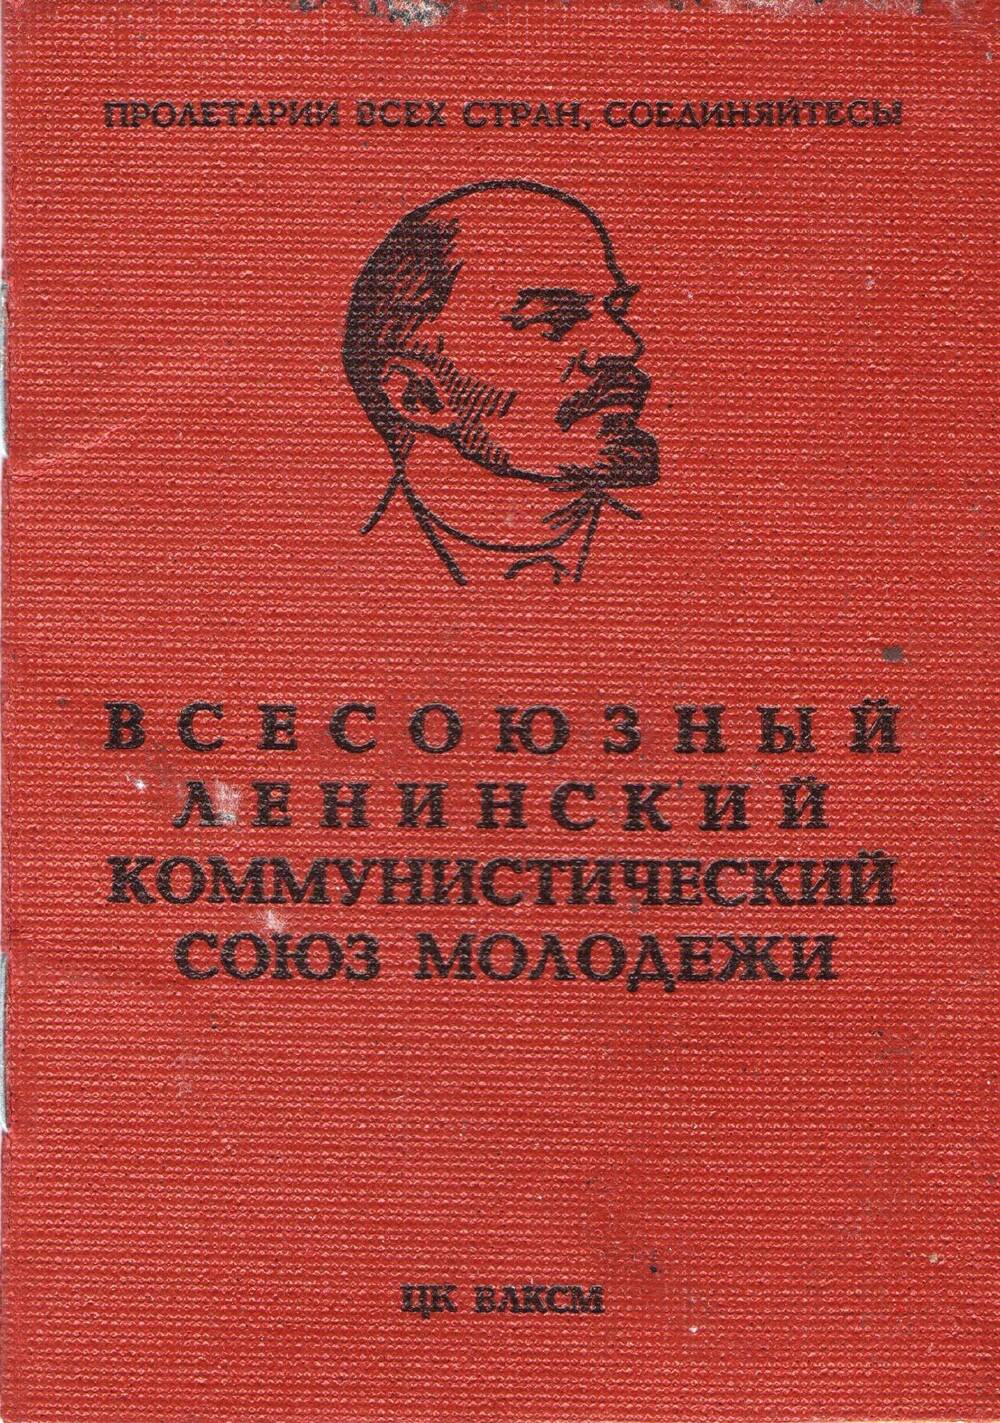 Документ. Комсомольский билет № 00347159 на имя Морозовой Л.А. Союз Советских Социалистических Республик, 1975 г.